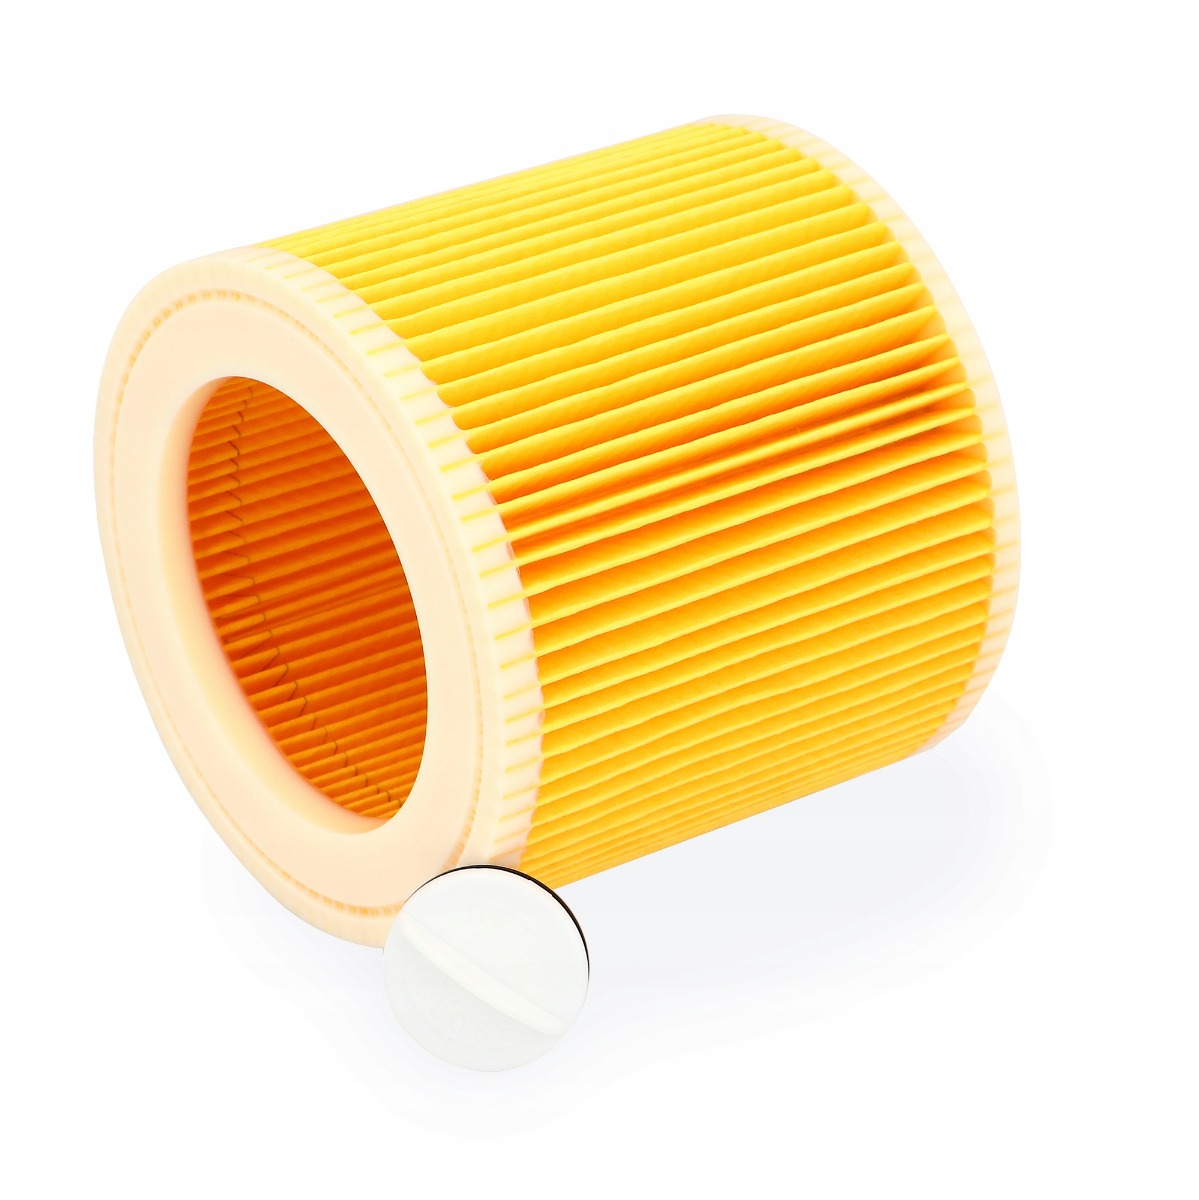 Kärcher papírové filtrační sáčky do vysavače WD3 200 MV3 10ks + 1 filtr megamix.shop